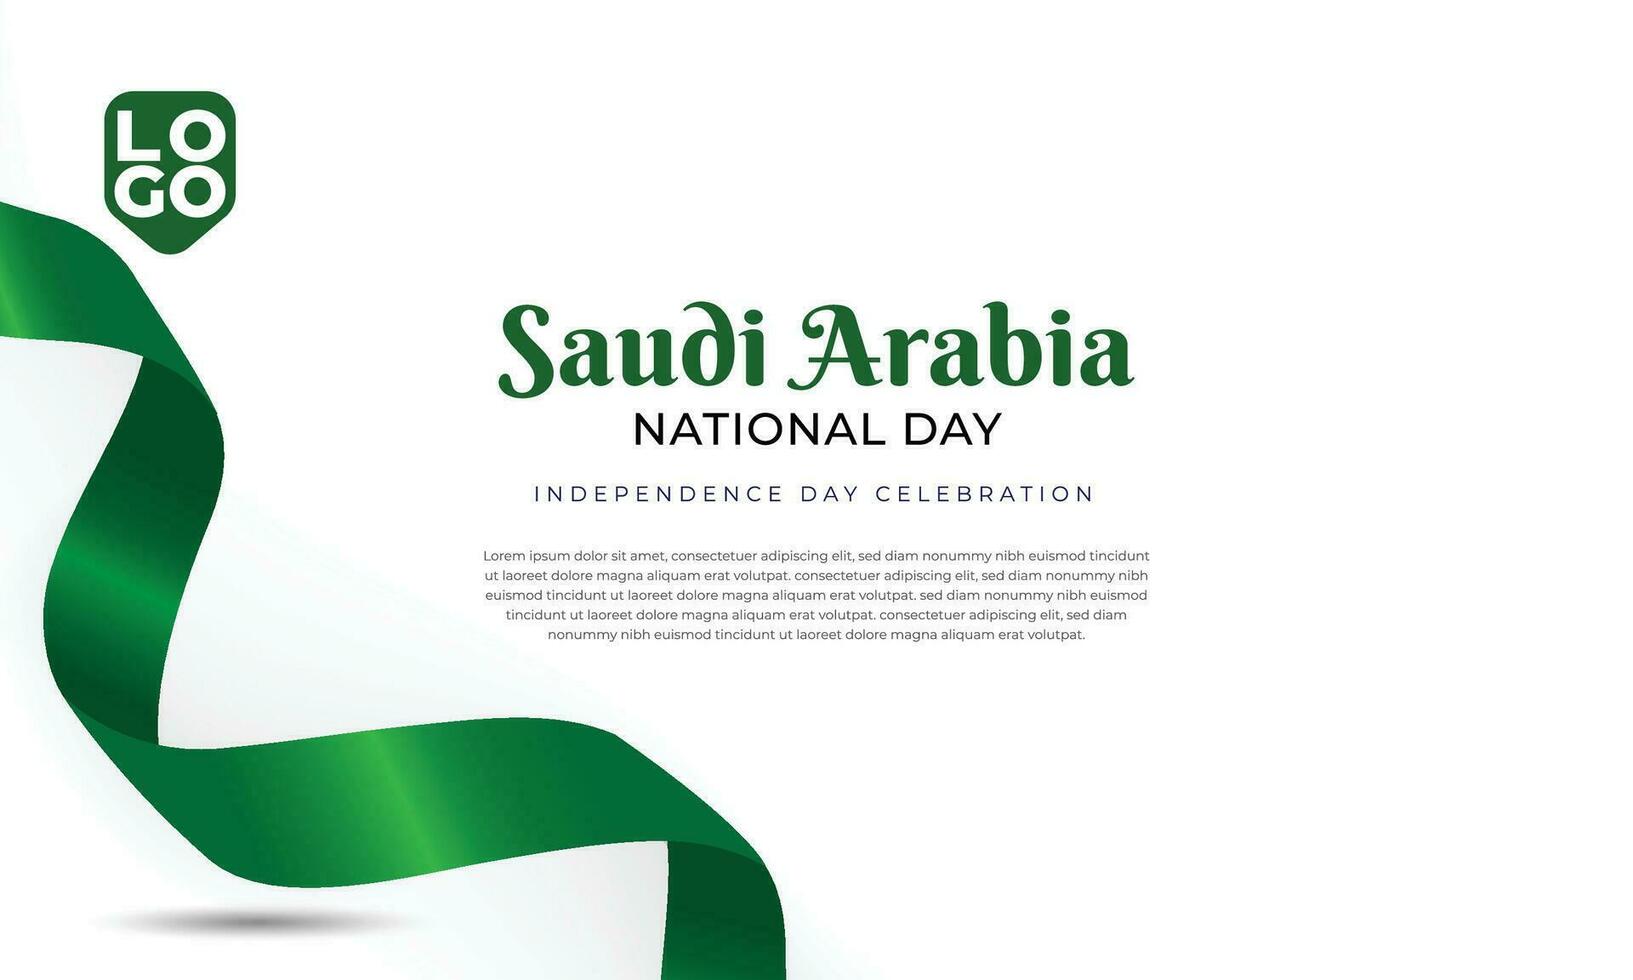 rike av saudi arabien nationell dag vektor